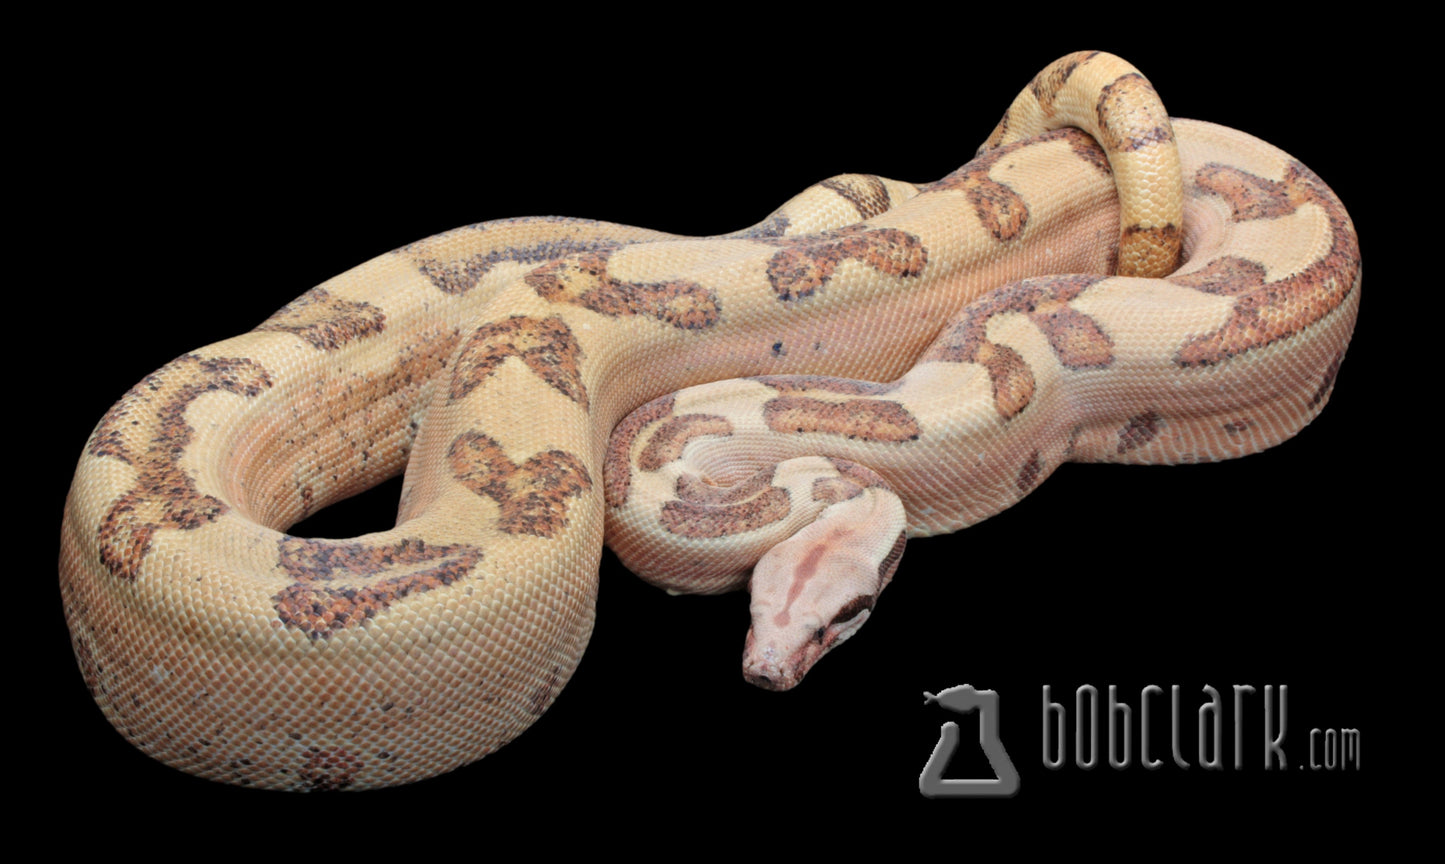 Labyrinth hypo boa, 2020 proven breeding male 72 inches